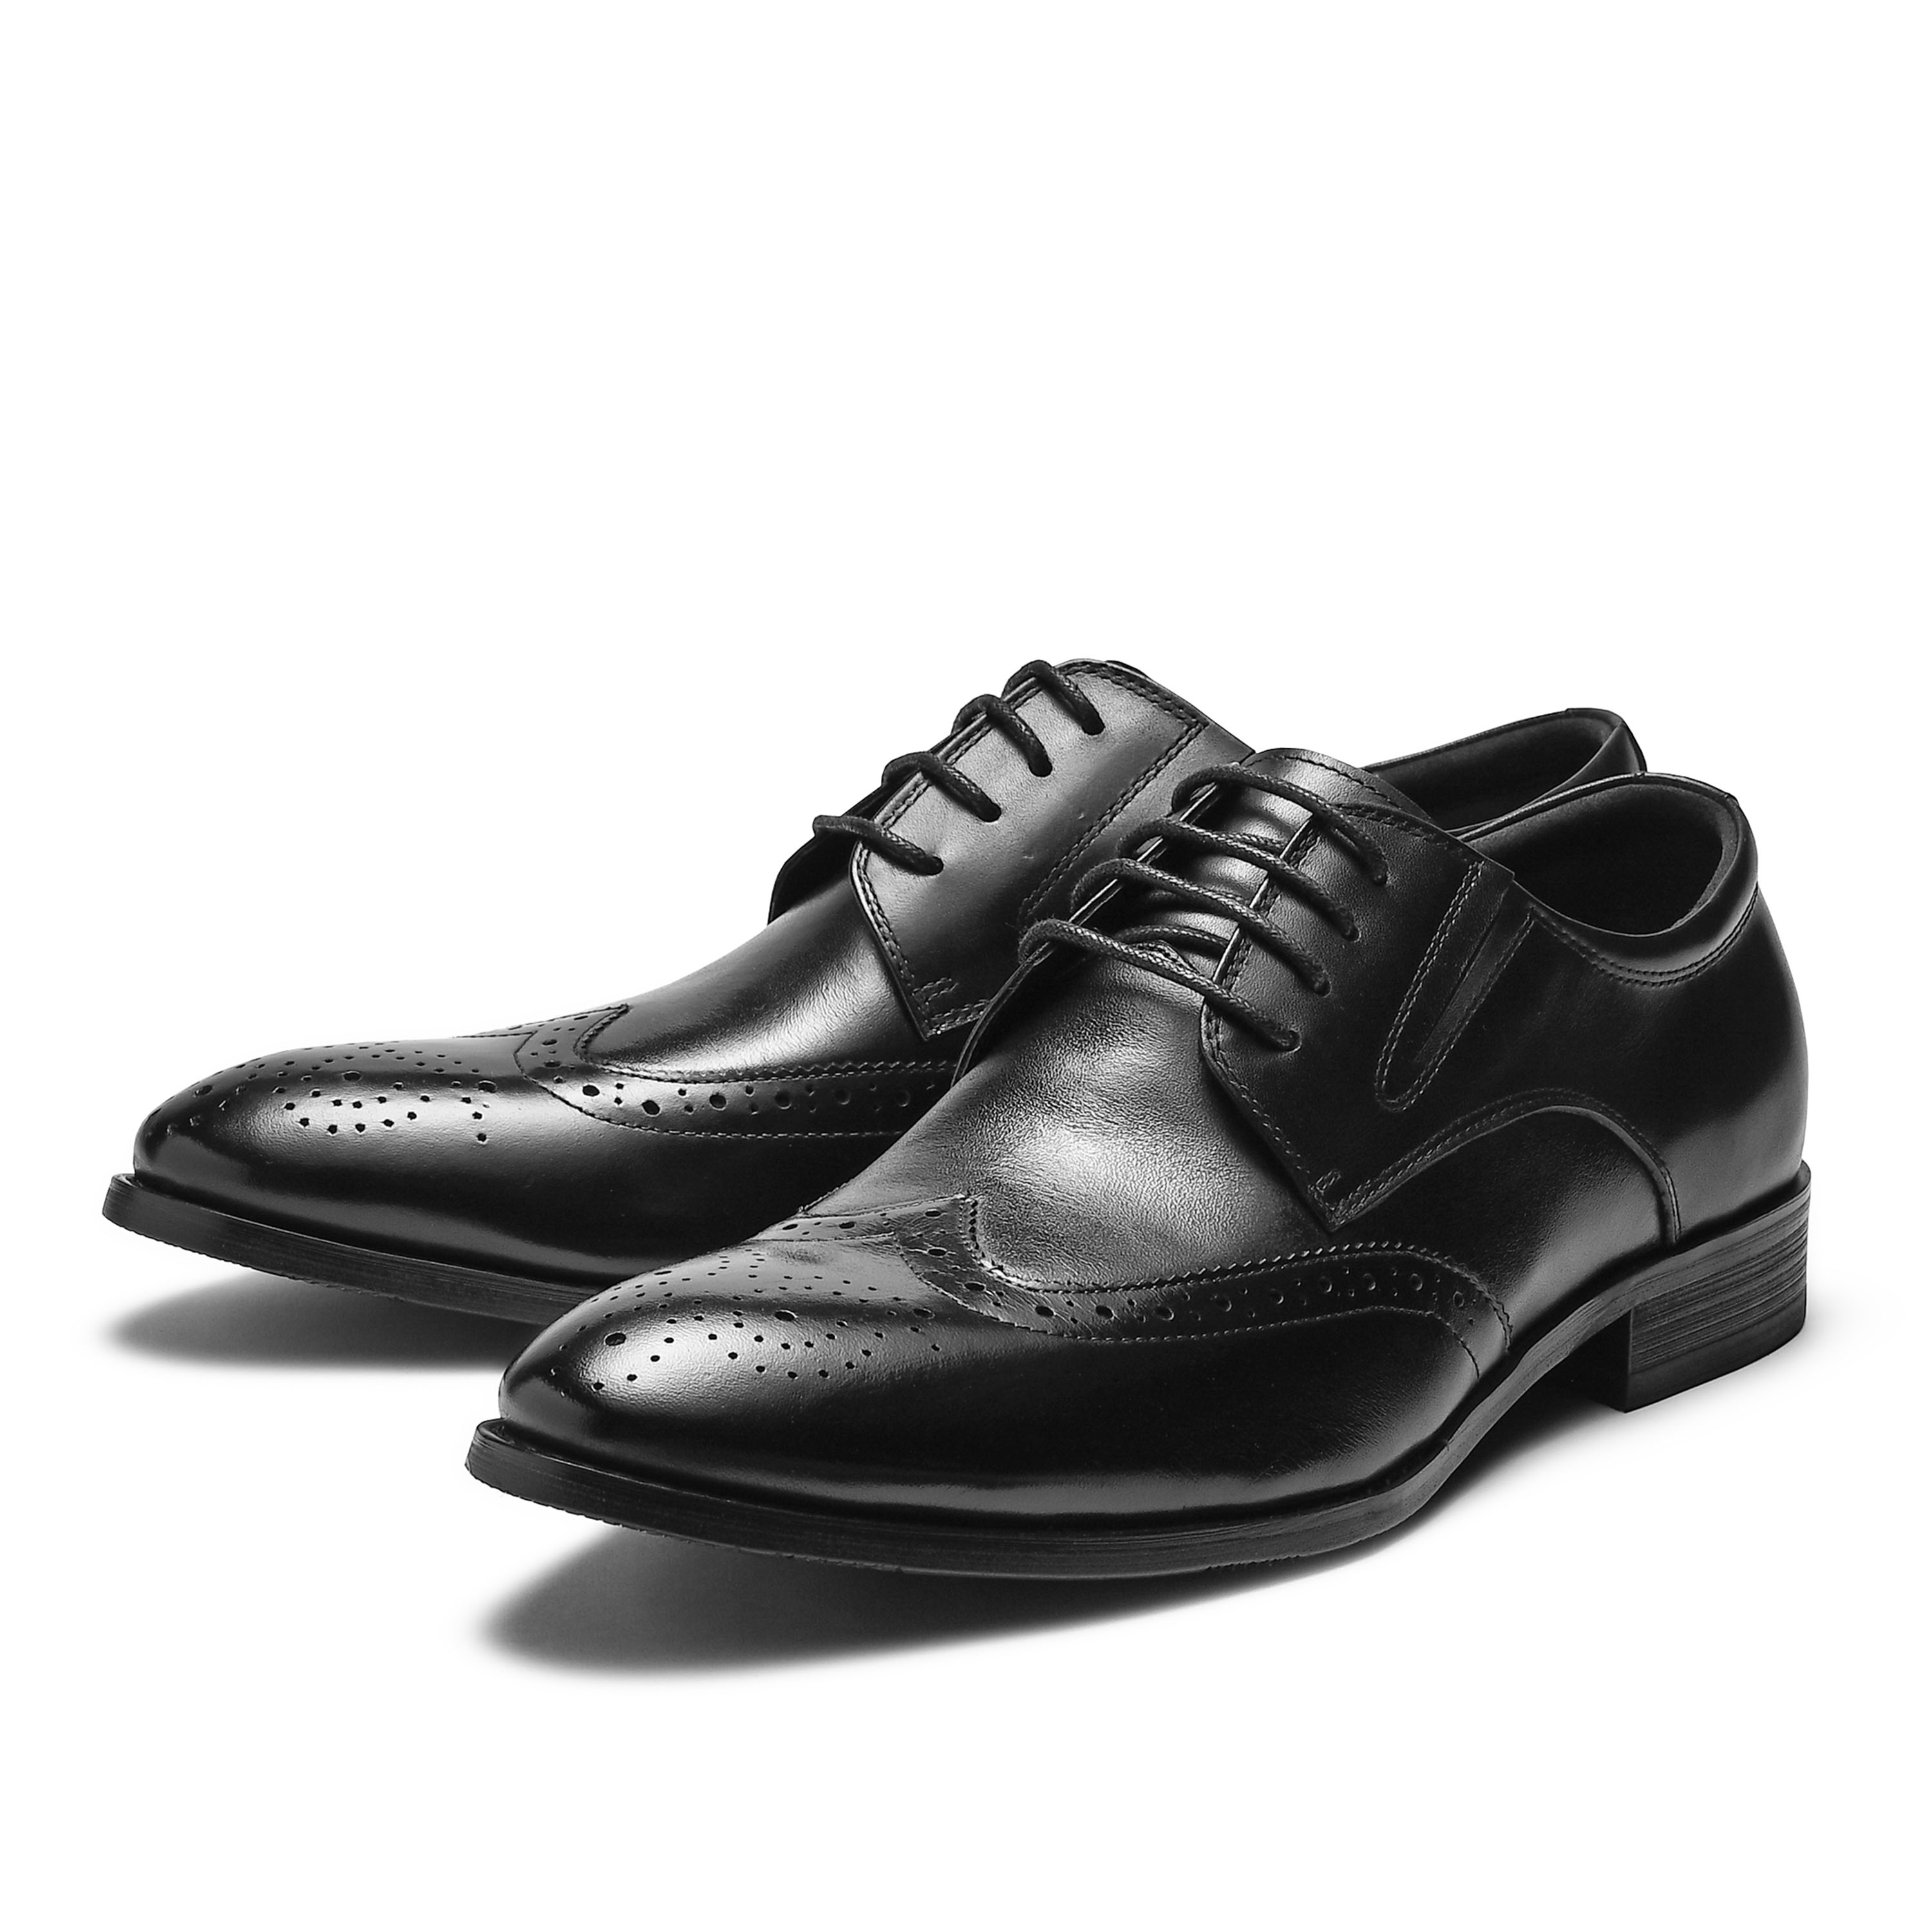 都會紳士皮鞋-黑919657-301